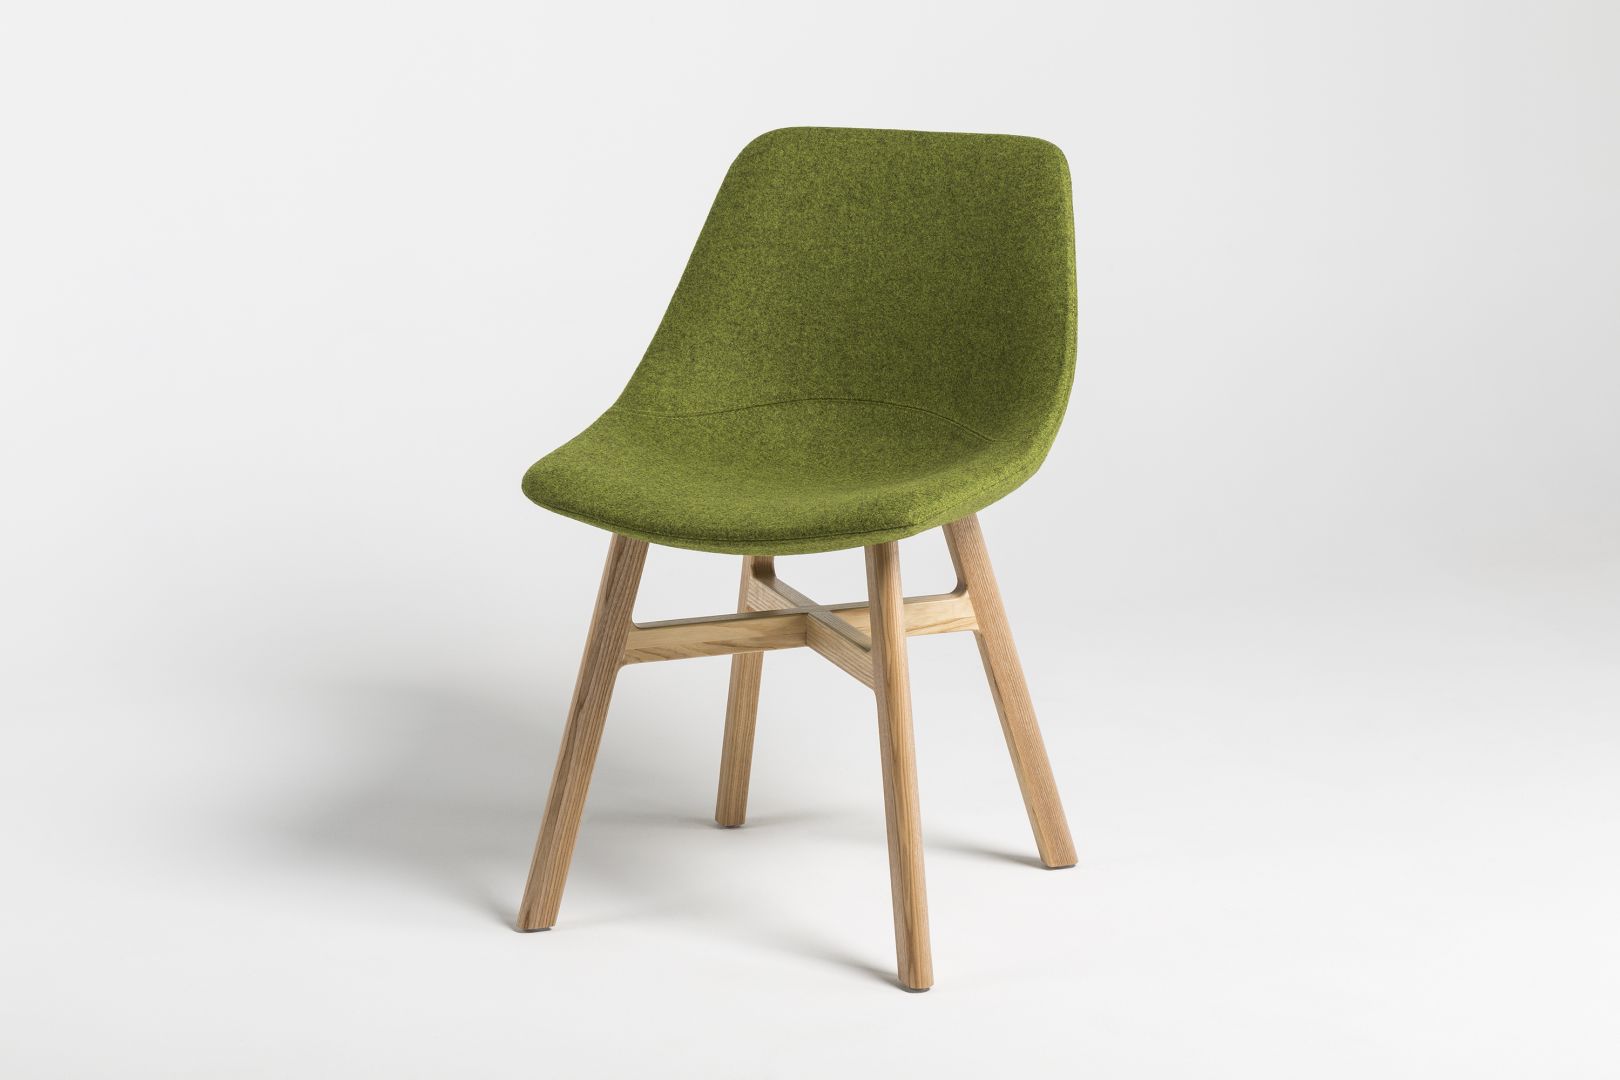 Krzesło Mishell w najmodniejszej zieleni. Fot. Euforma